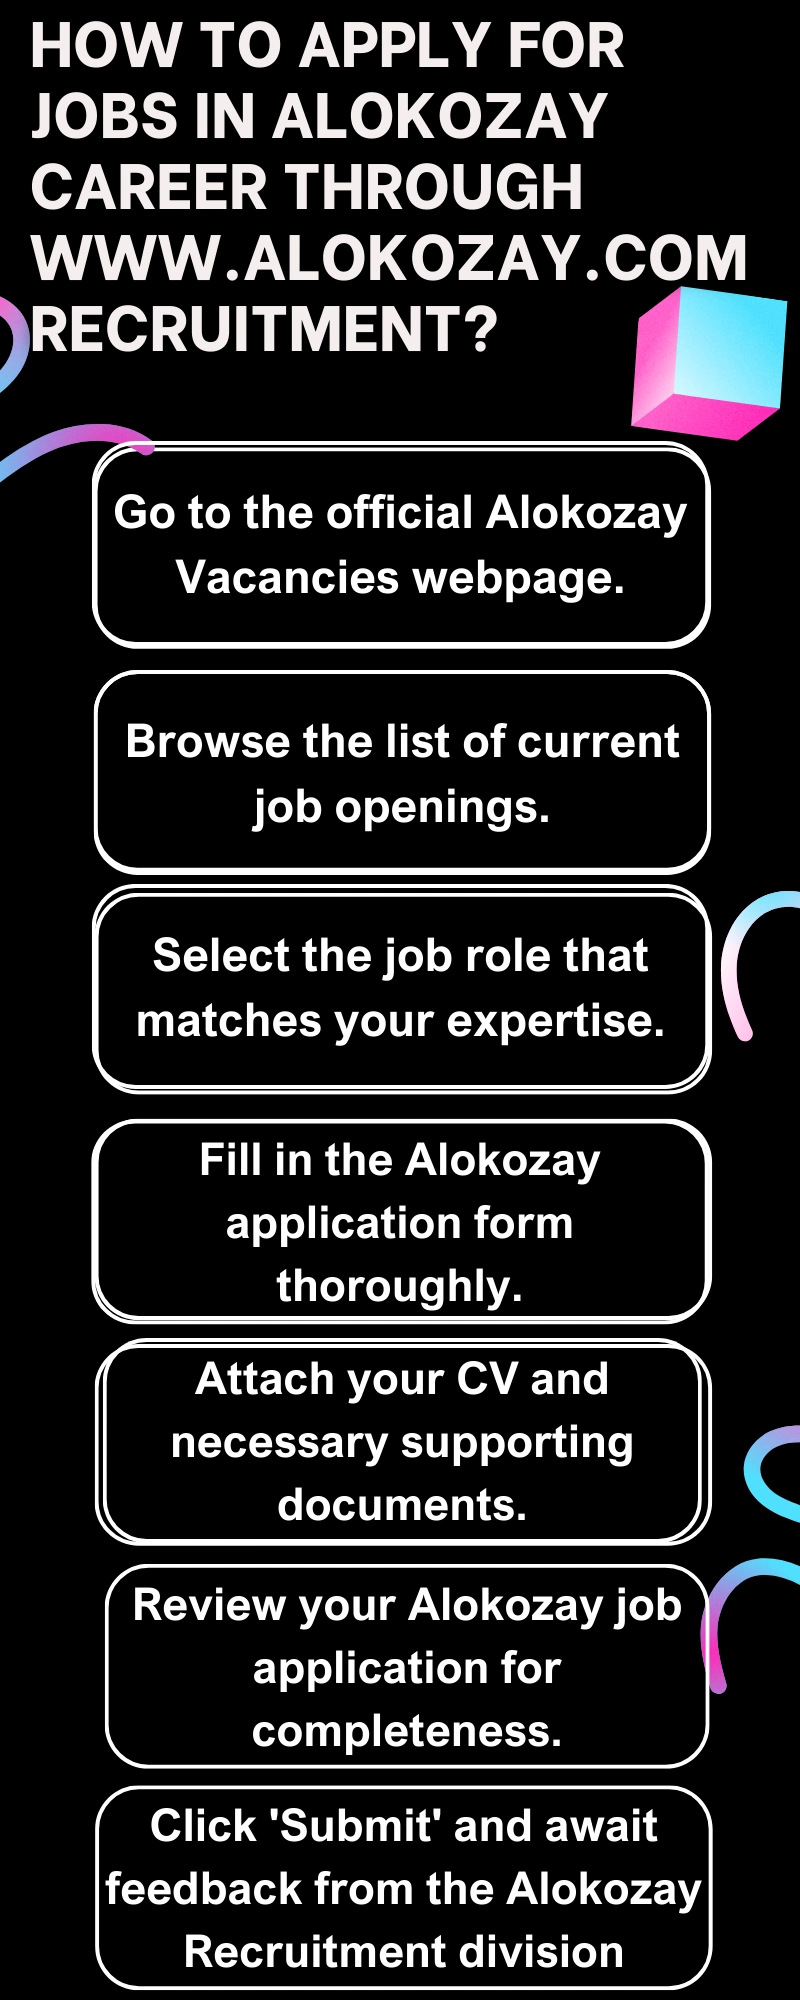 How to Apply for Jobs in Alokozay Career through www.alokozay.com recruitment?